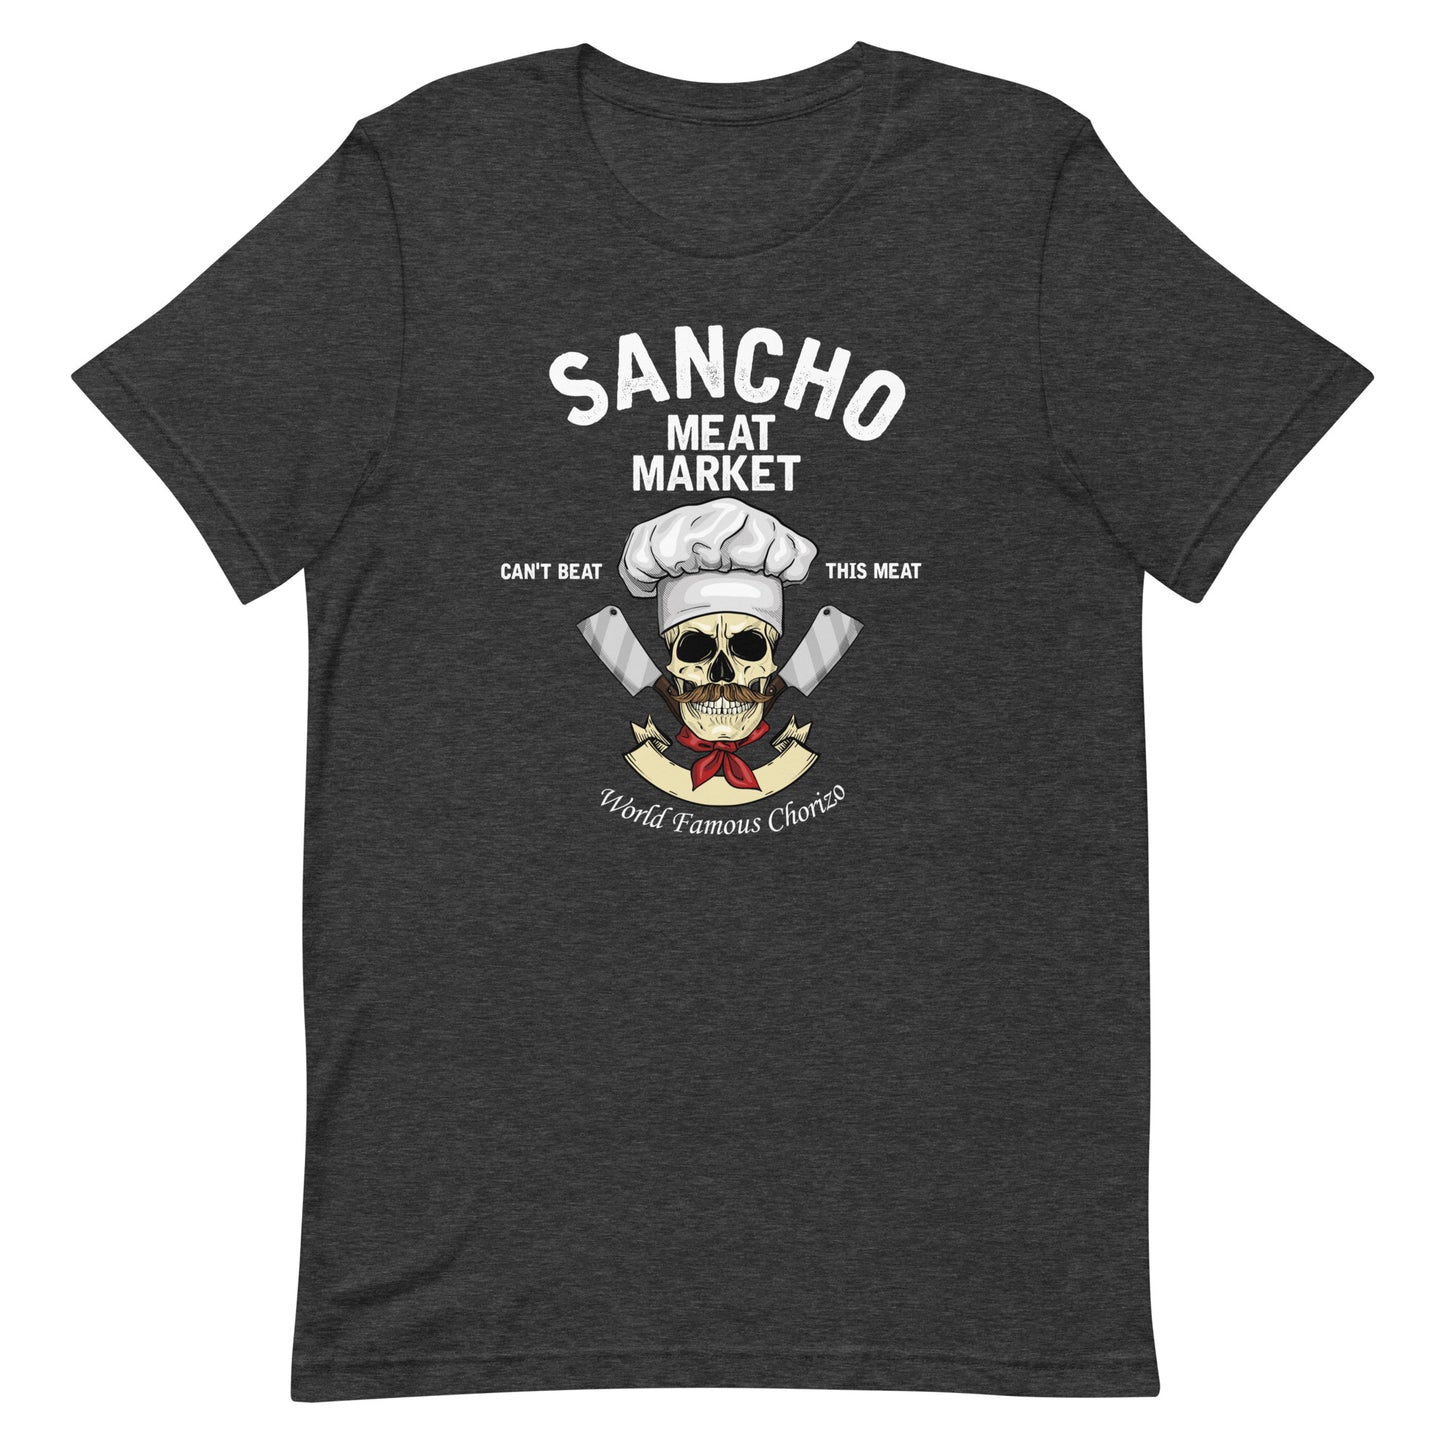 Sancho Meat Market T-Shirt Premium Quality